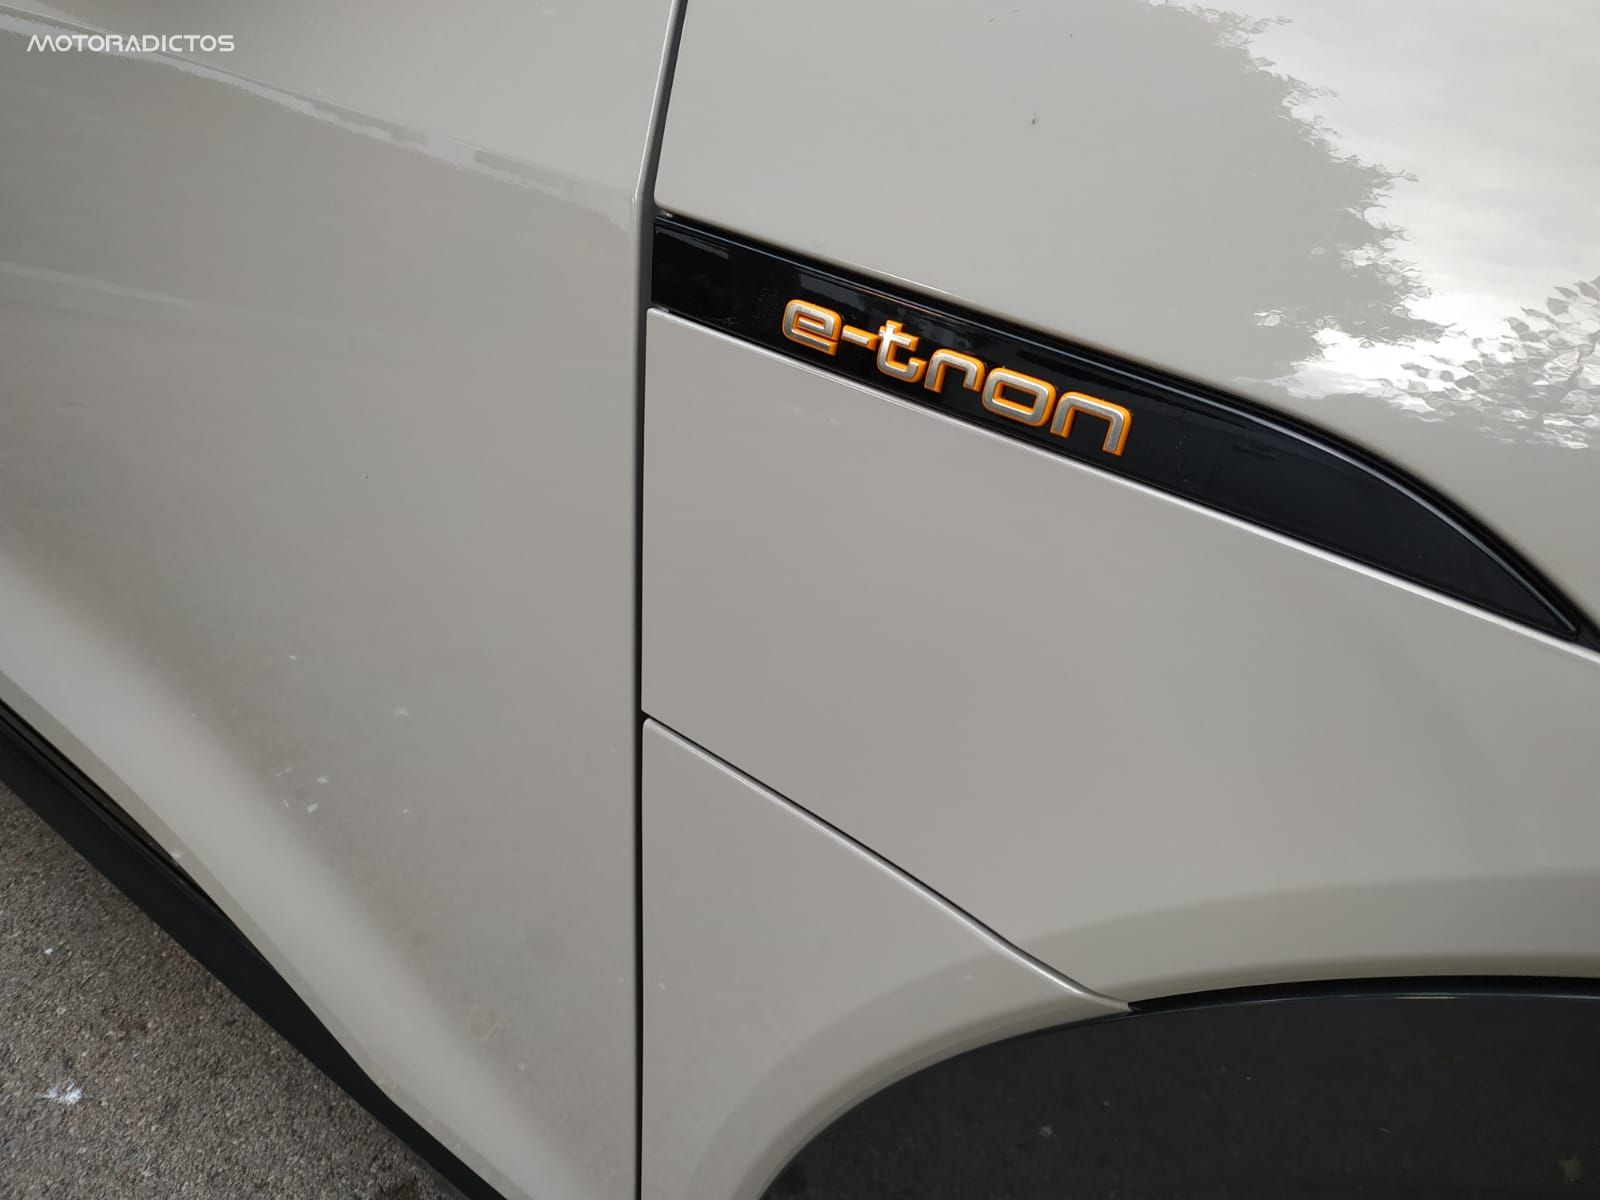 Al detalle: Audi E-tron, así luce al natural en España